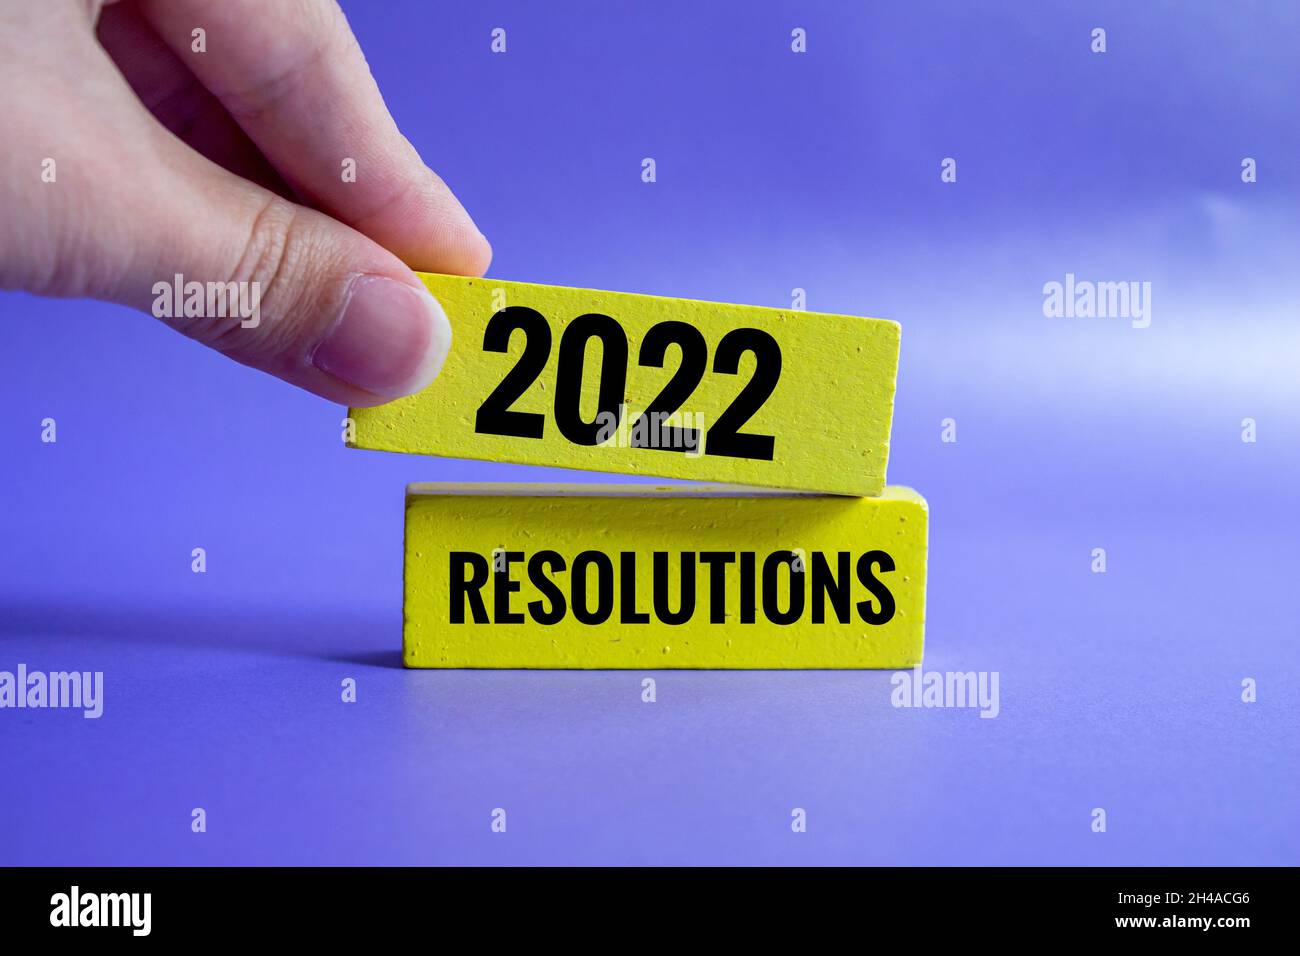 Neues Jahr 2022 Konzept, eine Hand fügt eine neue auf den Stapel von Holzblöcken, die sagt 2022 Auflösungen. Stockfoto